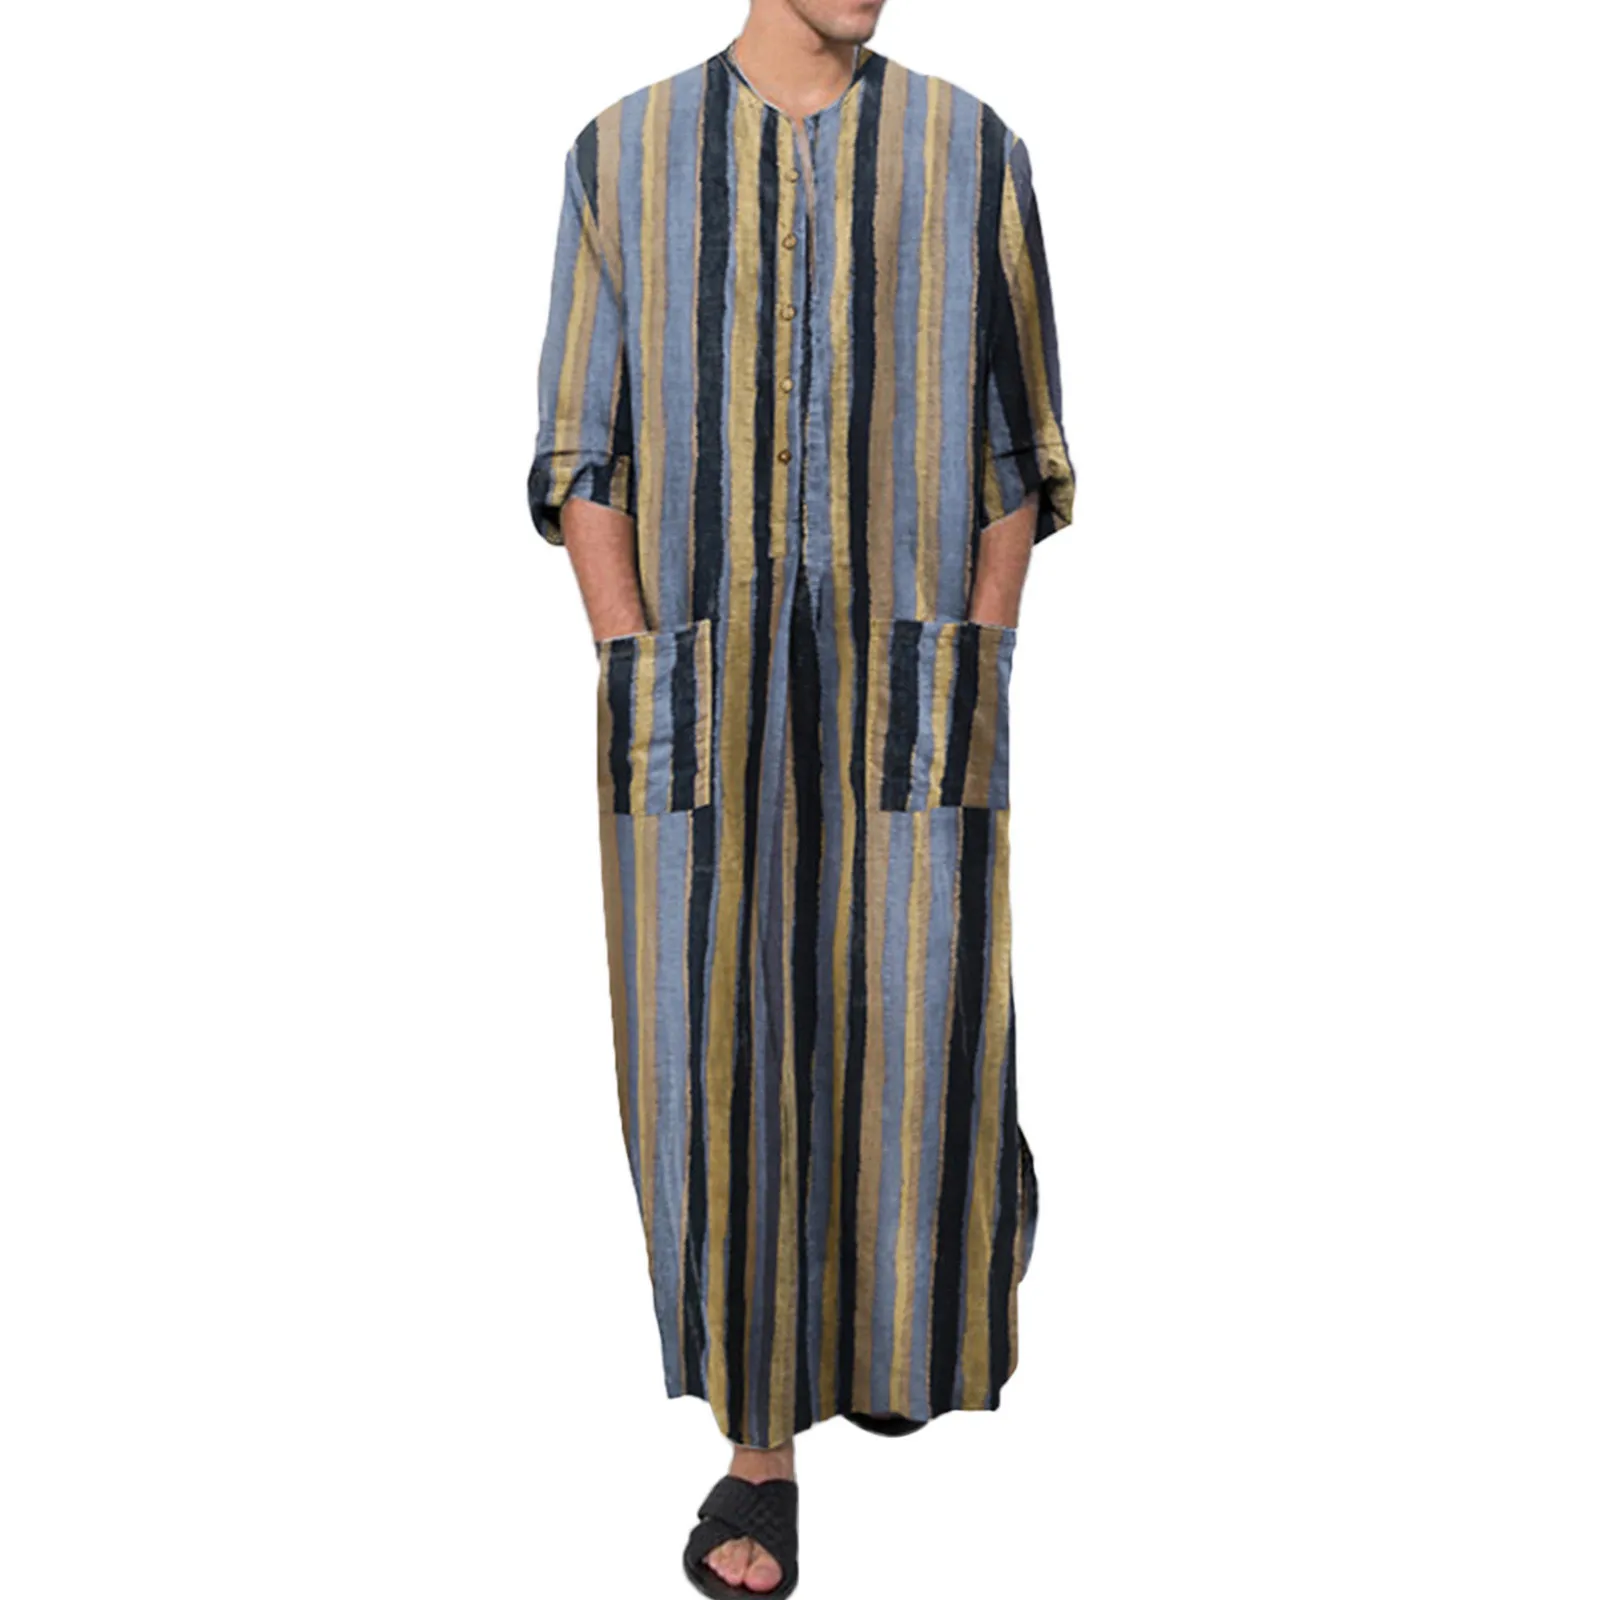 Robes musulmanes imprimées à rayures de style ethnique pour hommes avec boutons, caftan vintage, robes islamiques arabes de Dubaï, mode décontractée